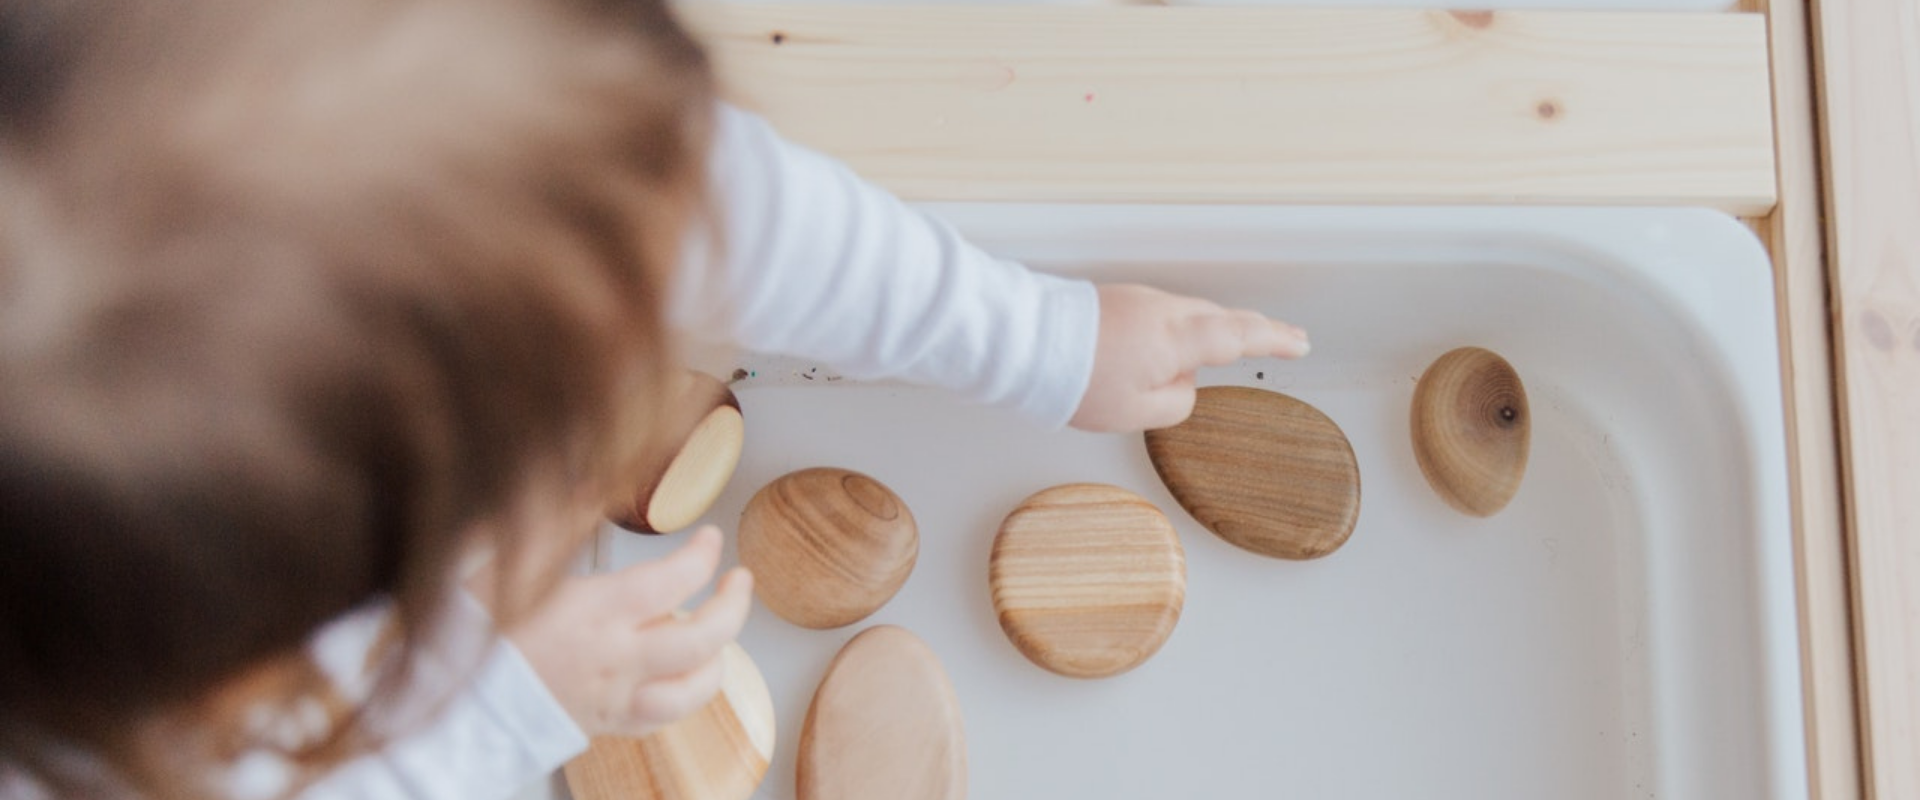 4 juegos Montessori para niños de 0 a 3 años que estimulan su aprendizaje -  Eres Mamá